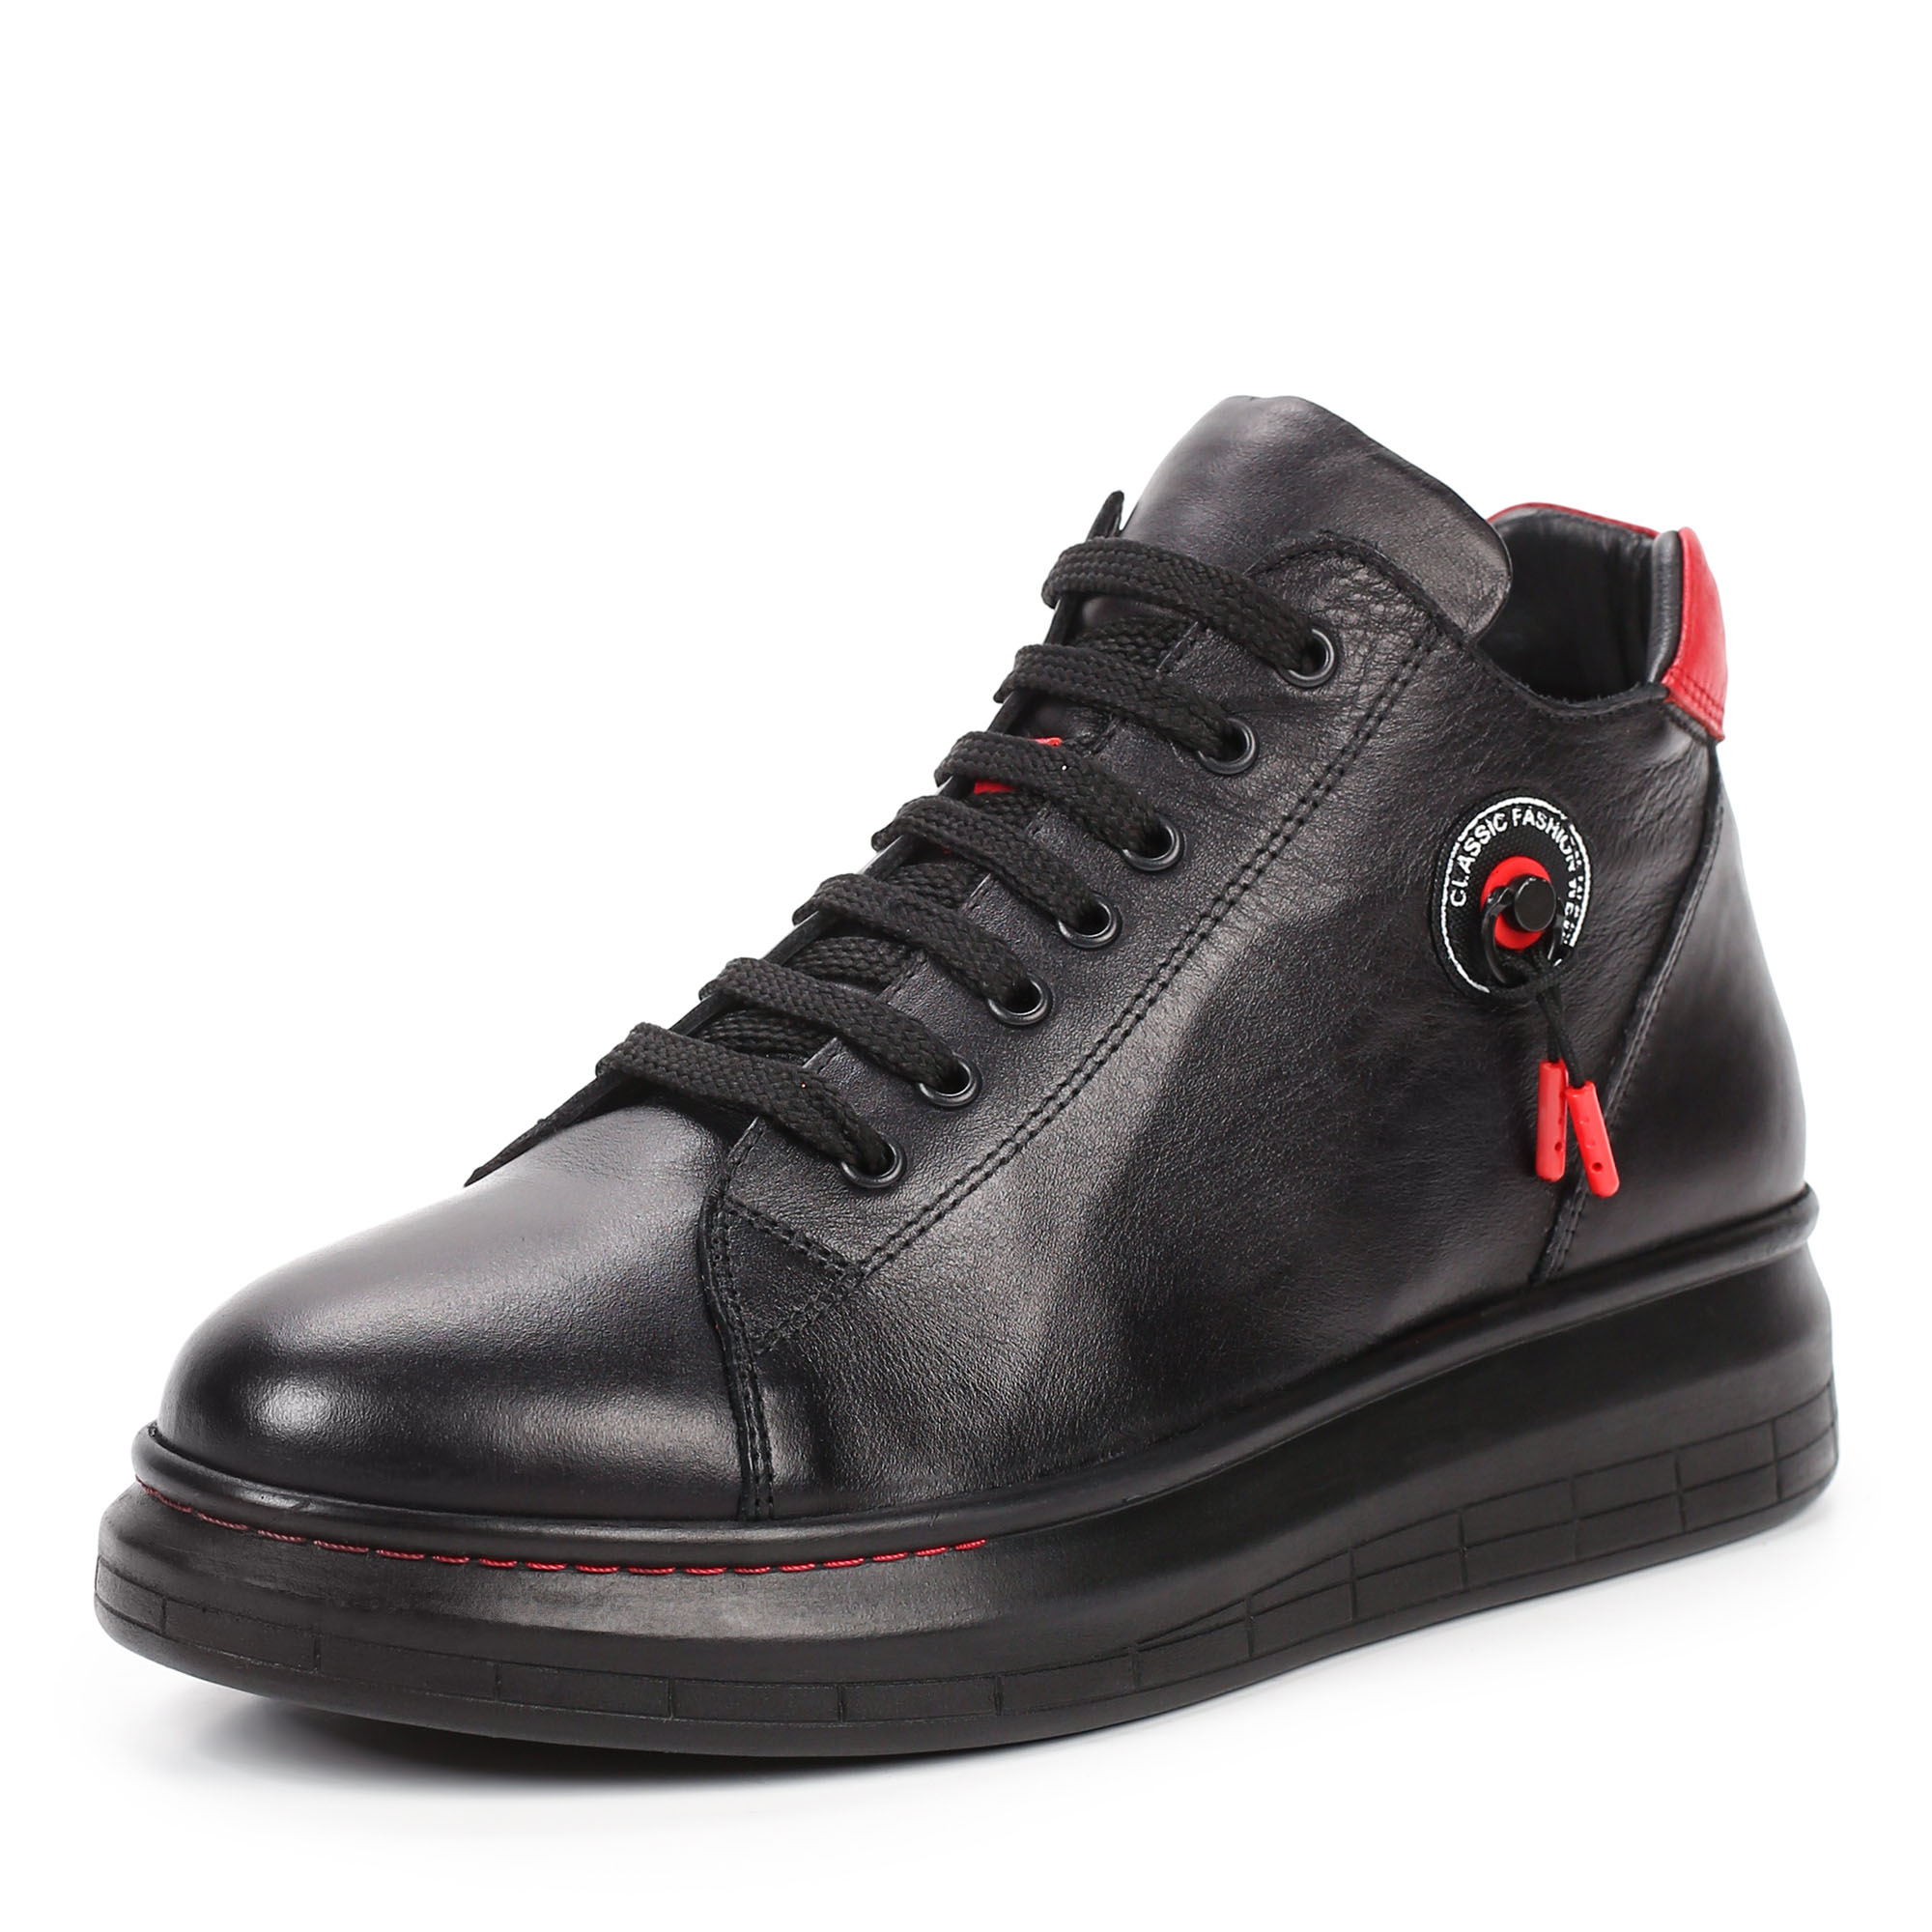 Ботинки Thomas Munz 539-015A-2102, цвет черный, размер 36 - фото 2